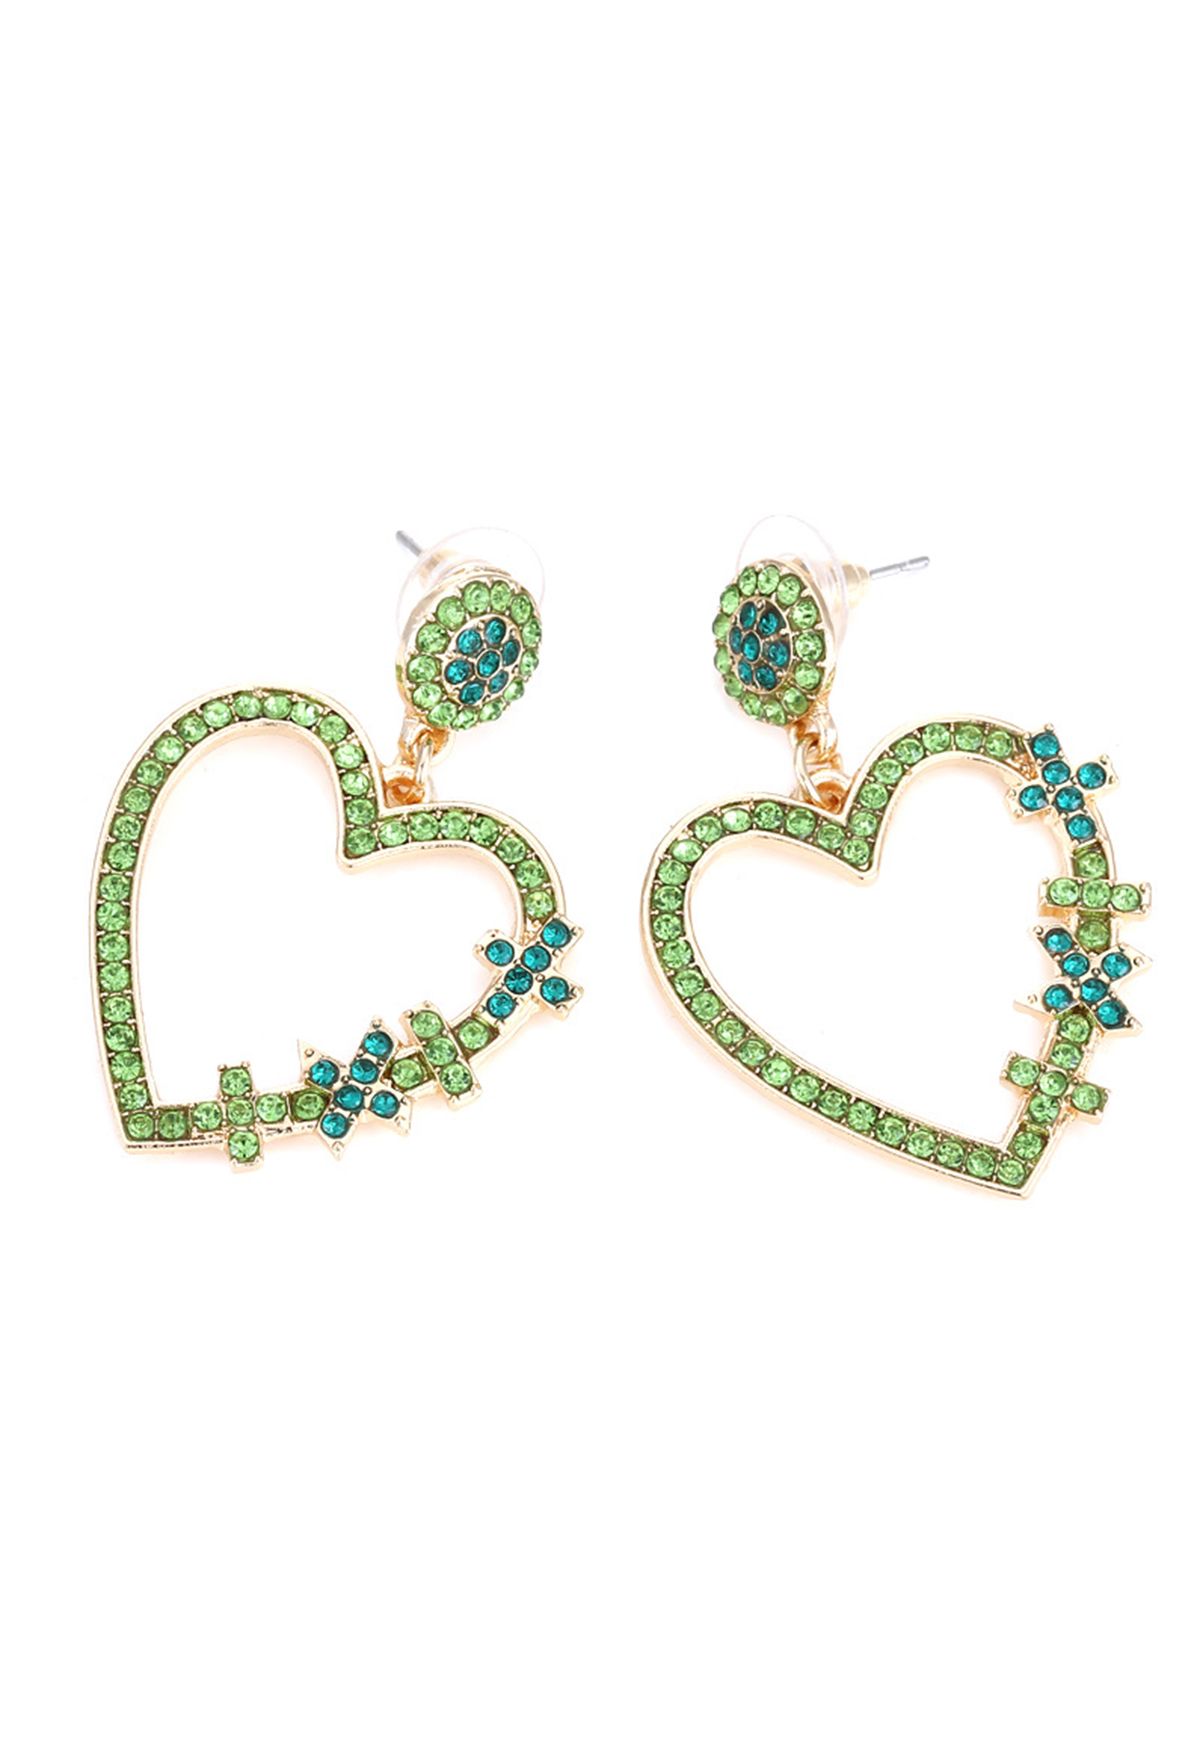 Boucles d'Oreilles Crochet Coeur Diamant Vert